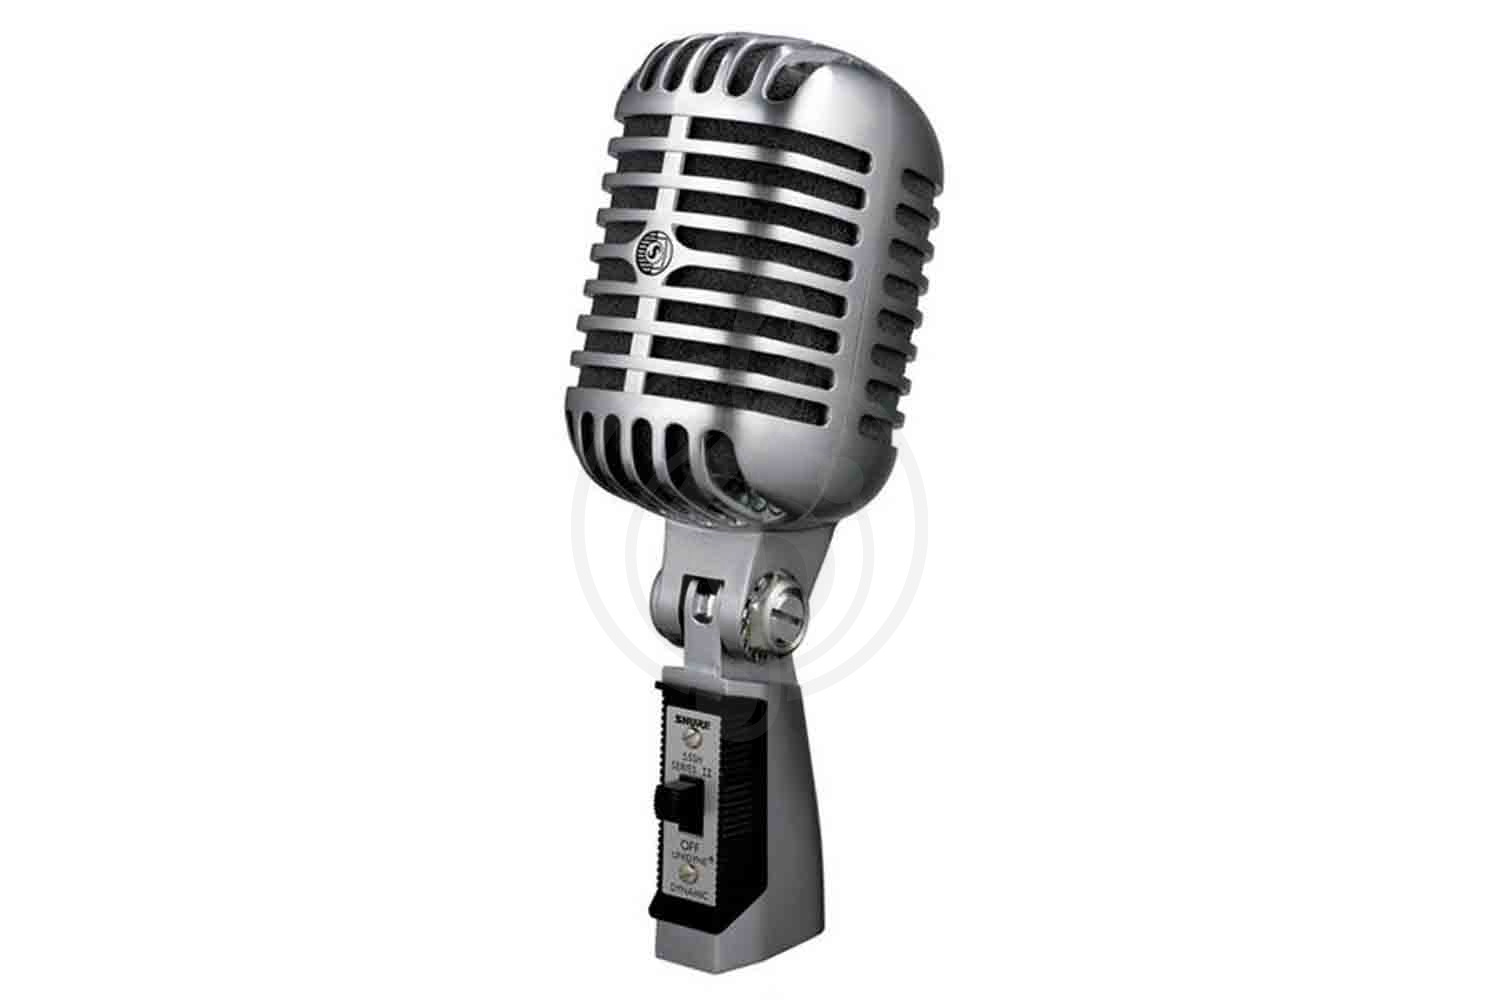 Динамический вокальный микрофон Динамические вокальные микрофоны Superlux Superlux PROH7FMKII Динамический вокальный ретро-м PROH7FMKII - фото 1